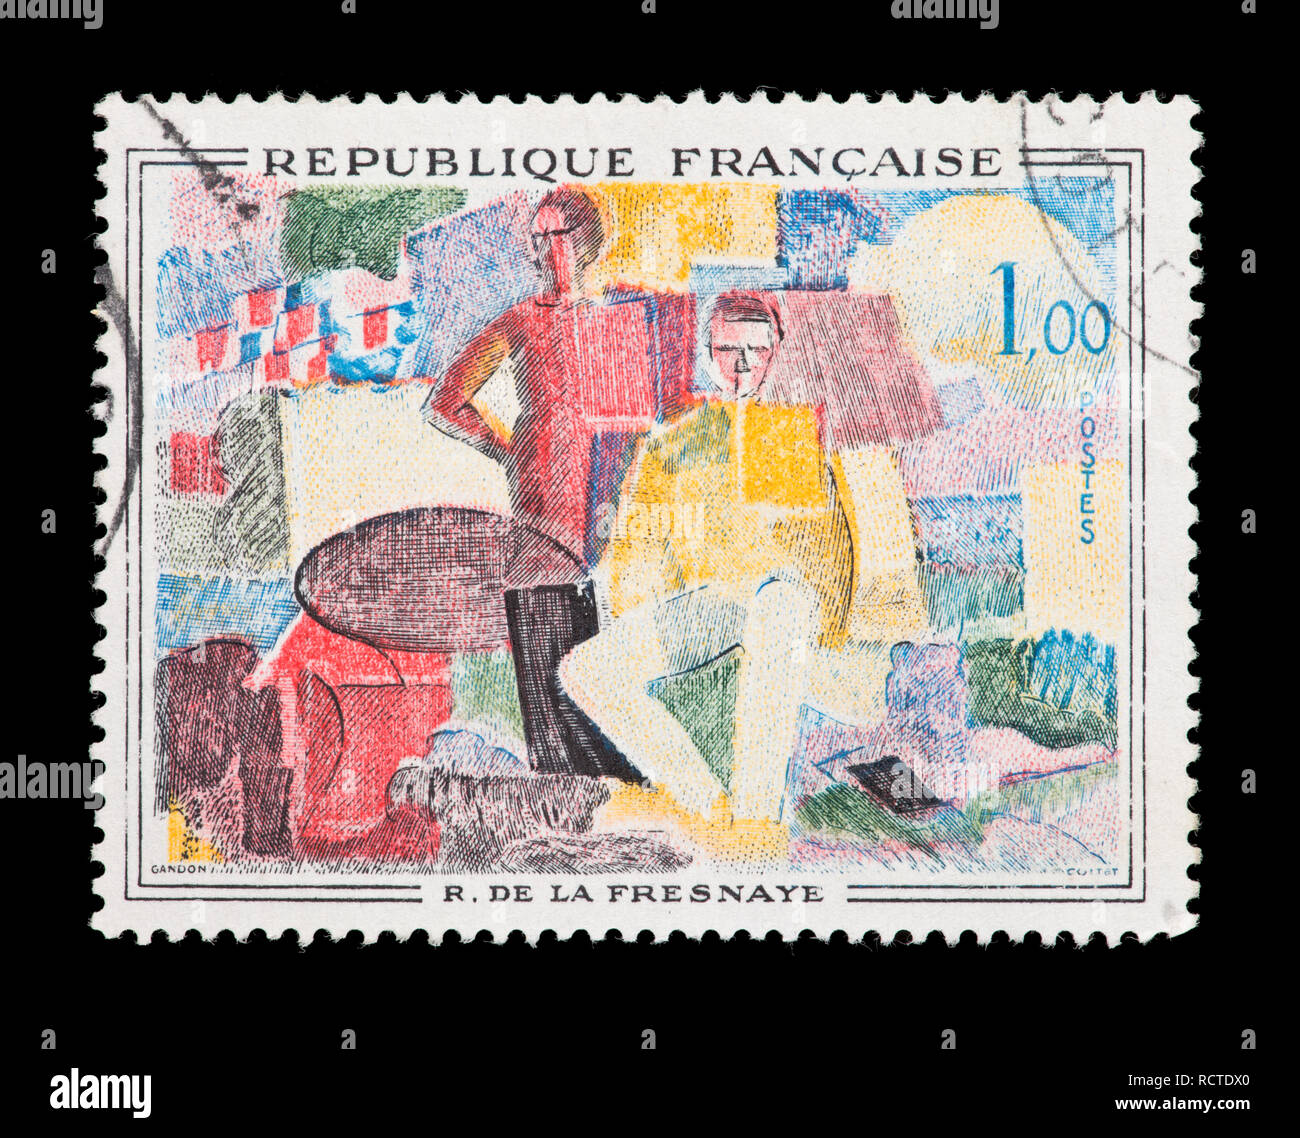 Briefmarke aus Frankreich mit der Darstellung der Roger de la Fresnaye Gemälde "Der 14. Juli" Stockfoto